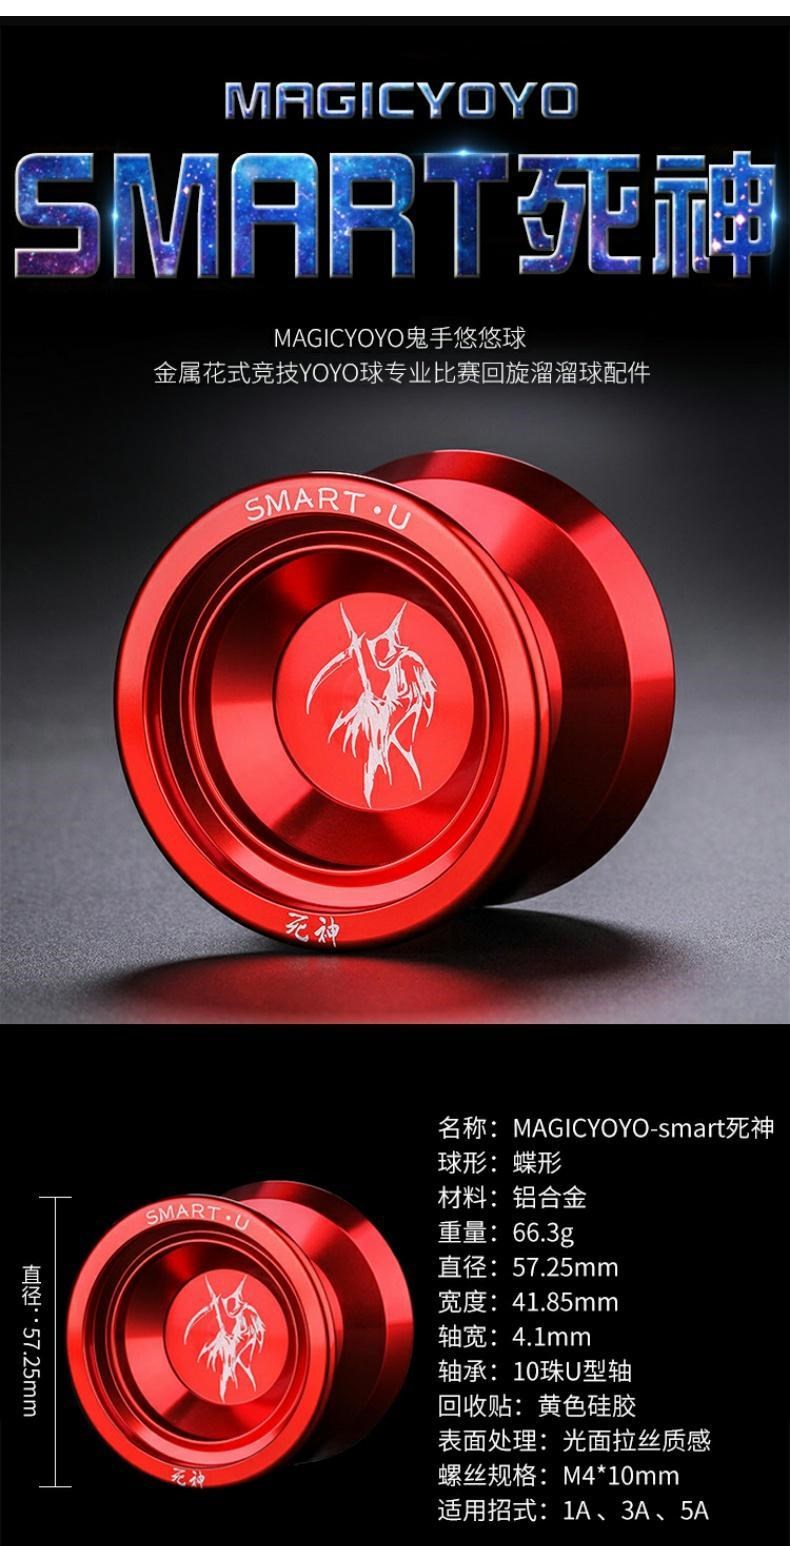 Xiaoyang’s family death cao cấp yo-yo bóng dài ưa thích đặc biệt trò chơi yo-yo chuyên nghiệp bằng kim loại siêu chuyên nghiệp cho giấc ngủ của trẻ em - YO-YO